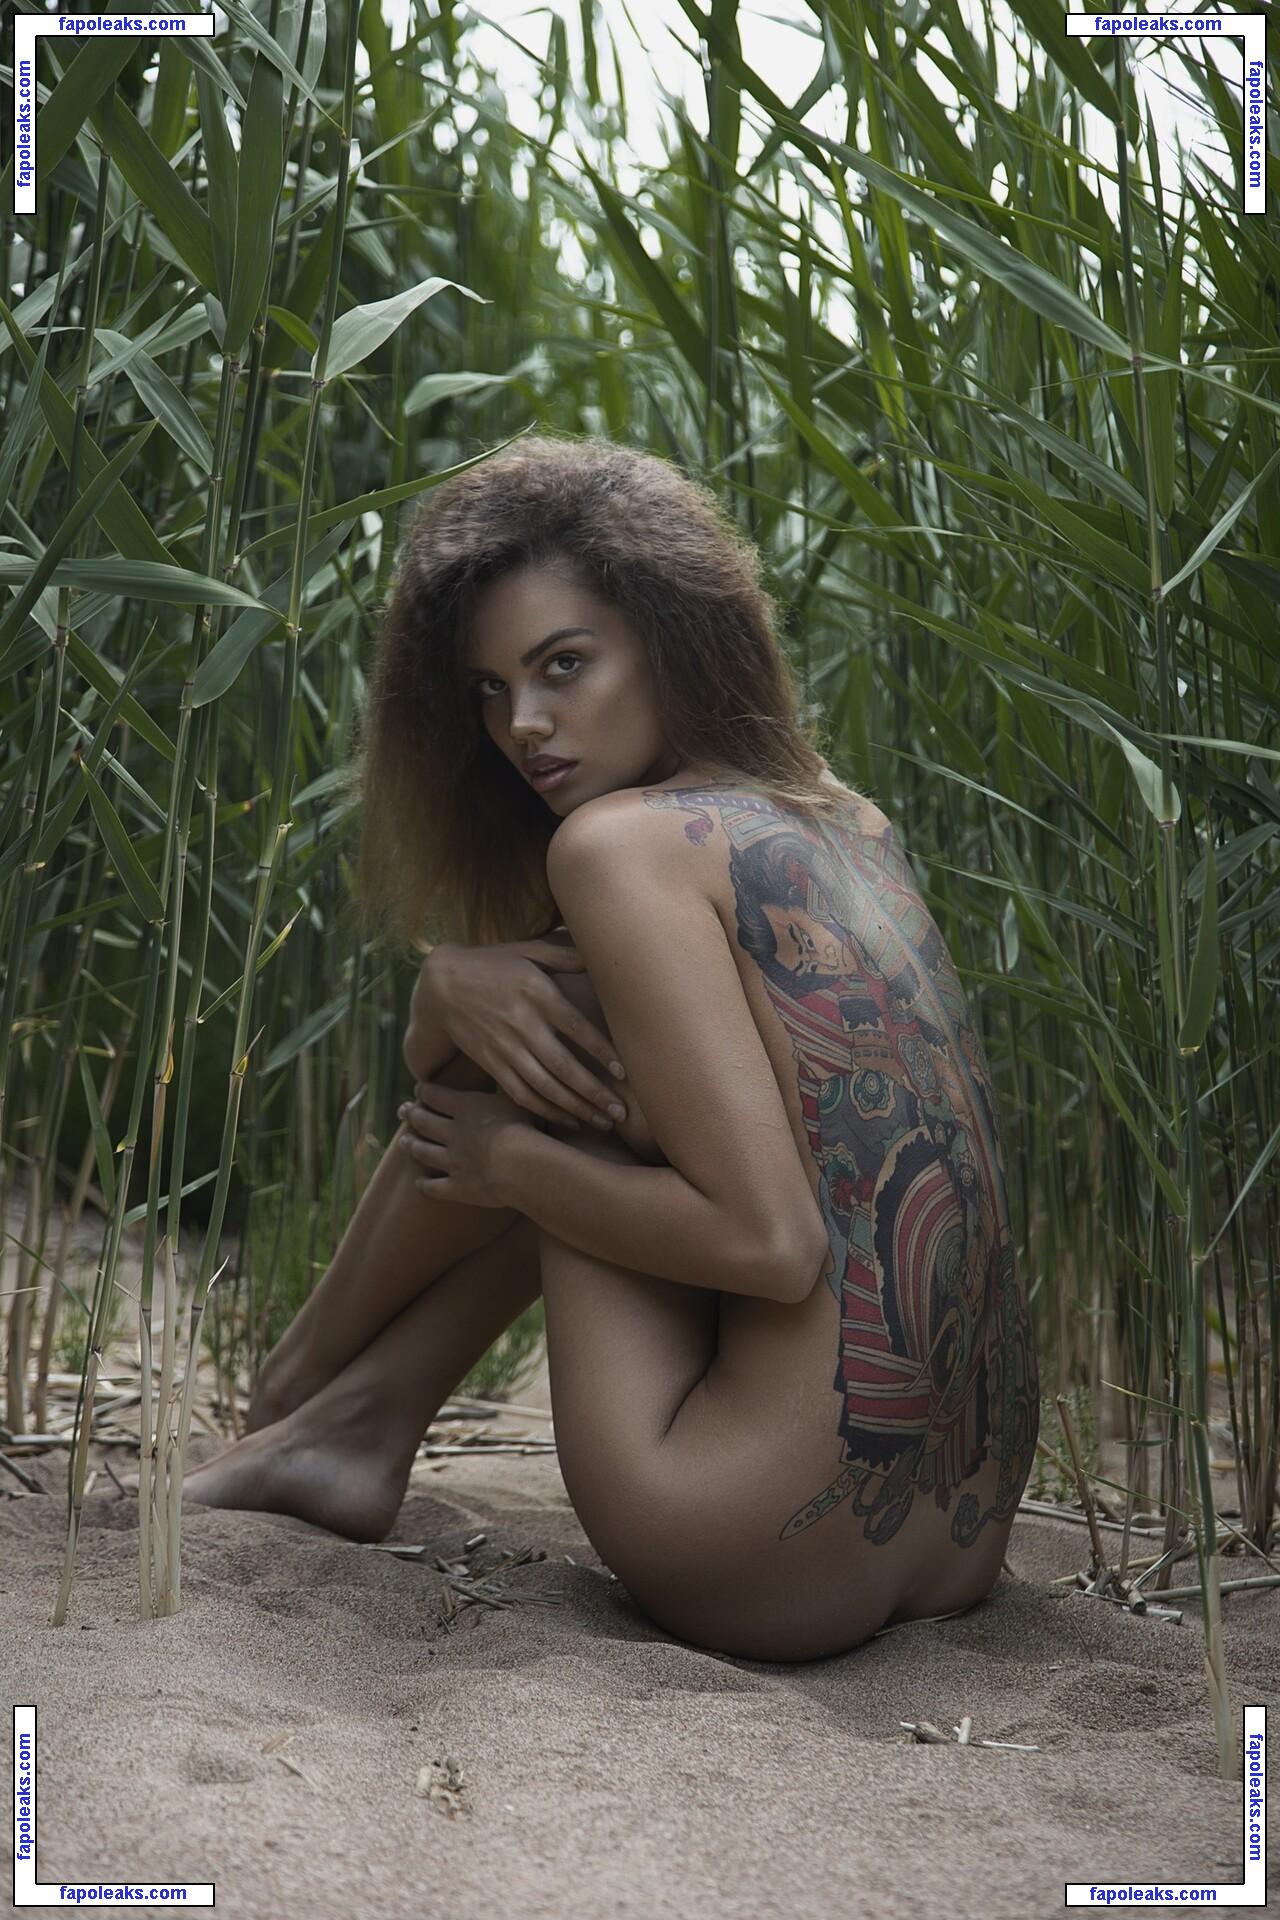 Ksenia Koks / Kseniya K / dark_amerika nude photo #0004 from OnlyFans